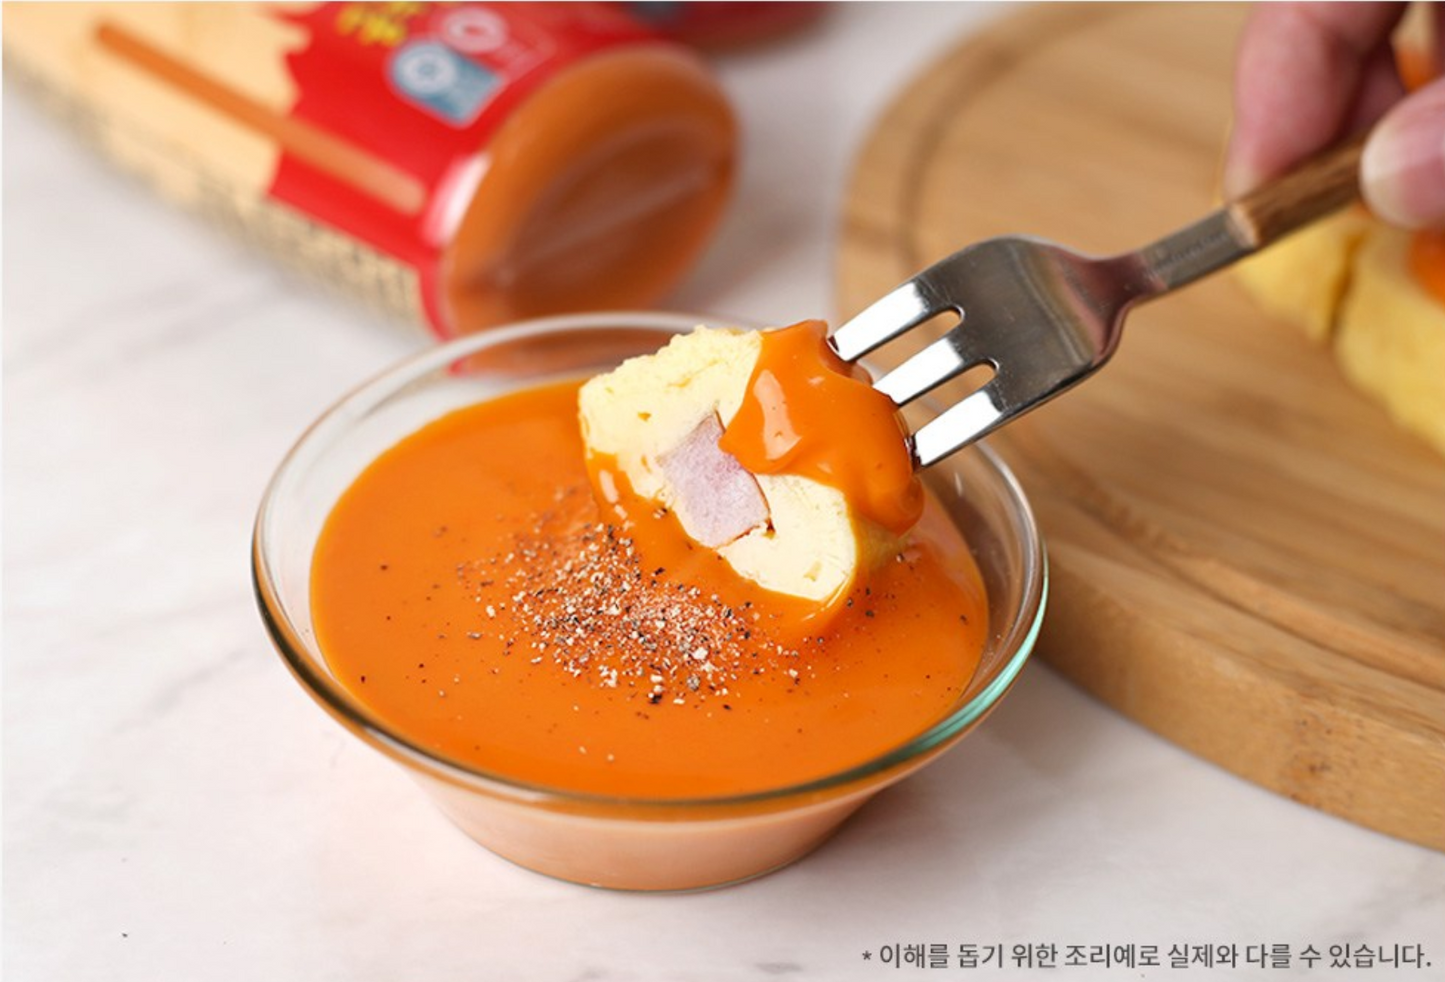 Samyang Buldak Mayo Sauce (삼양 불닭마요 소스)